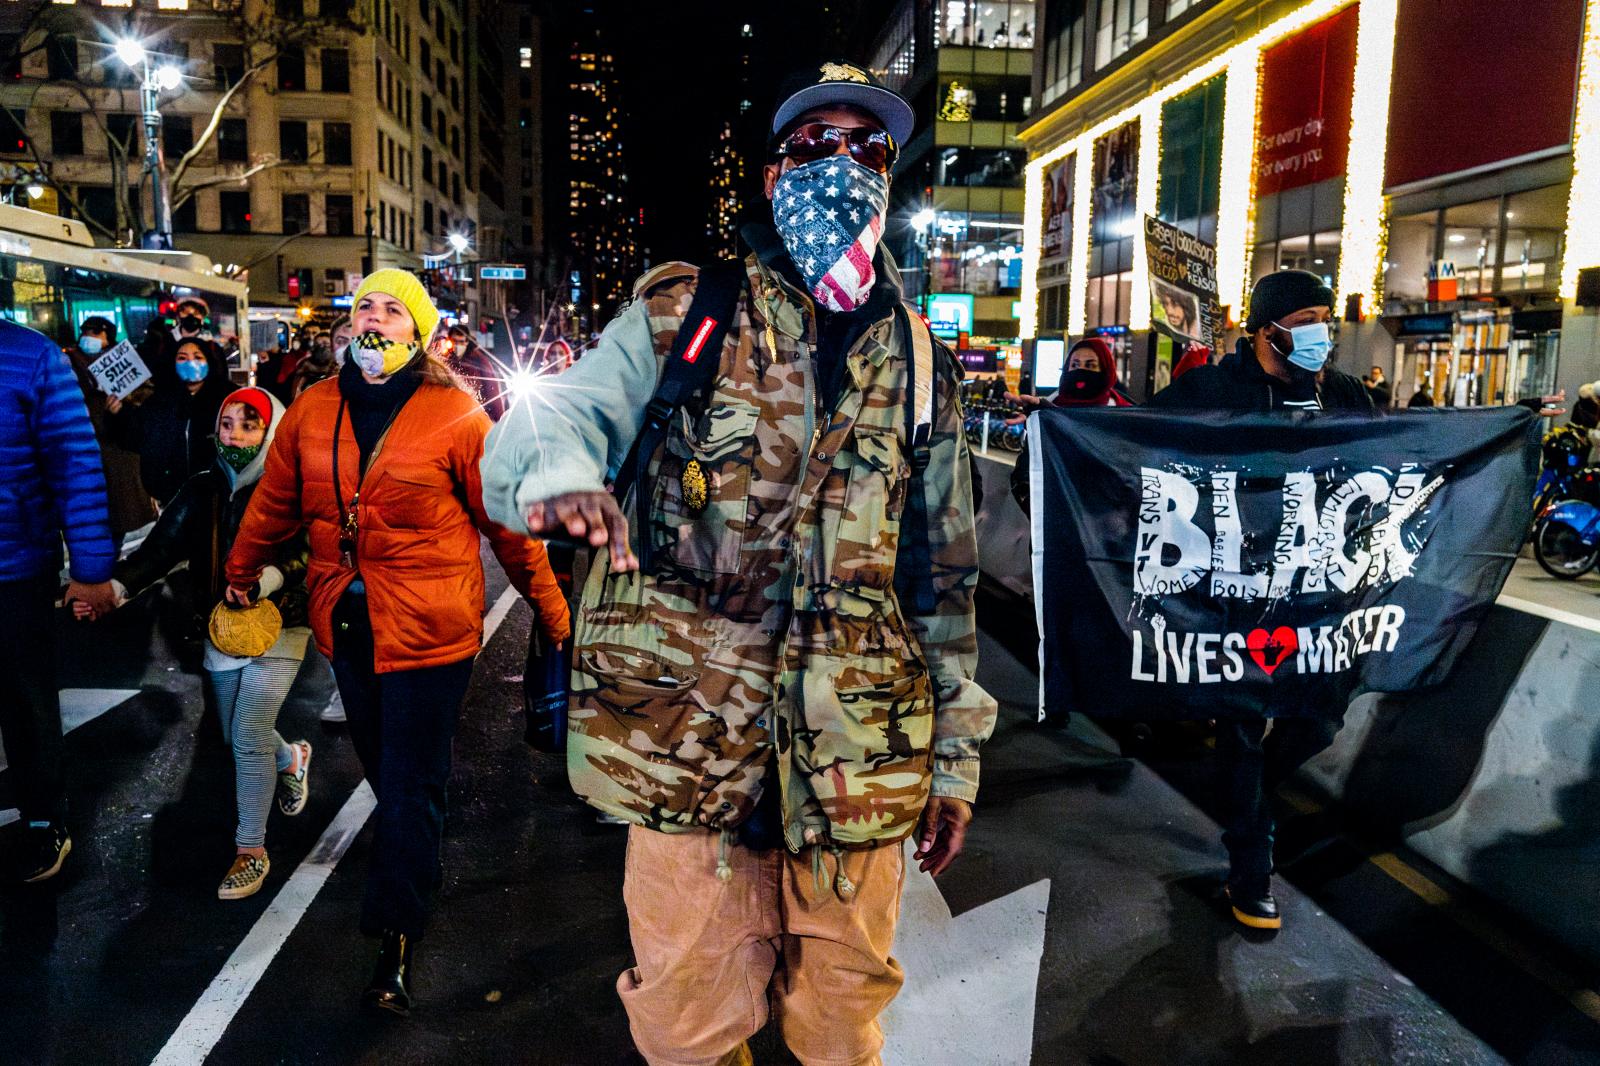 Black Lives Matter -  December 10, 2020  Greeley Square/32nd Street, Manhattan...